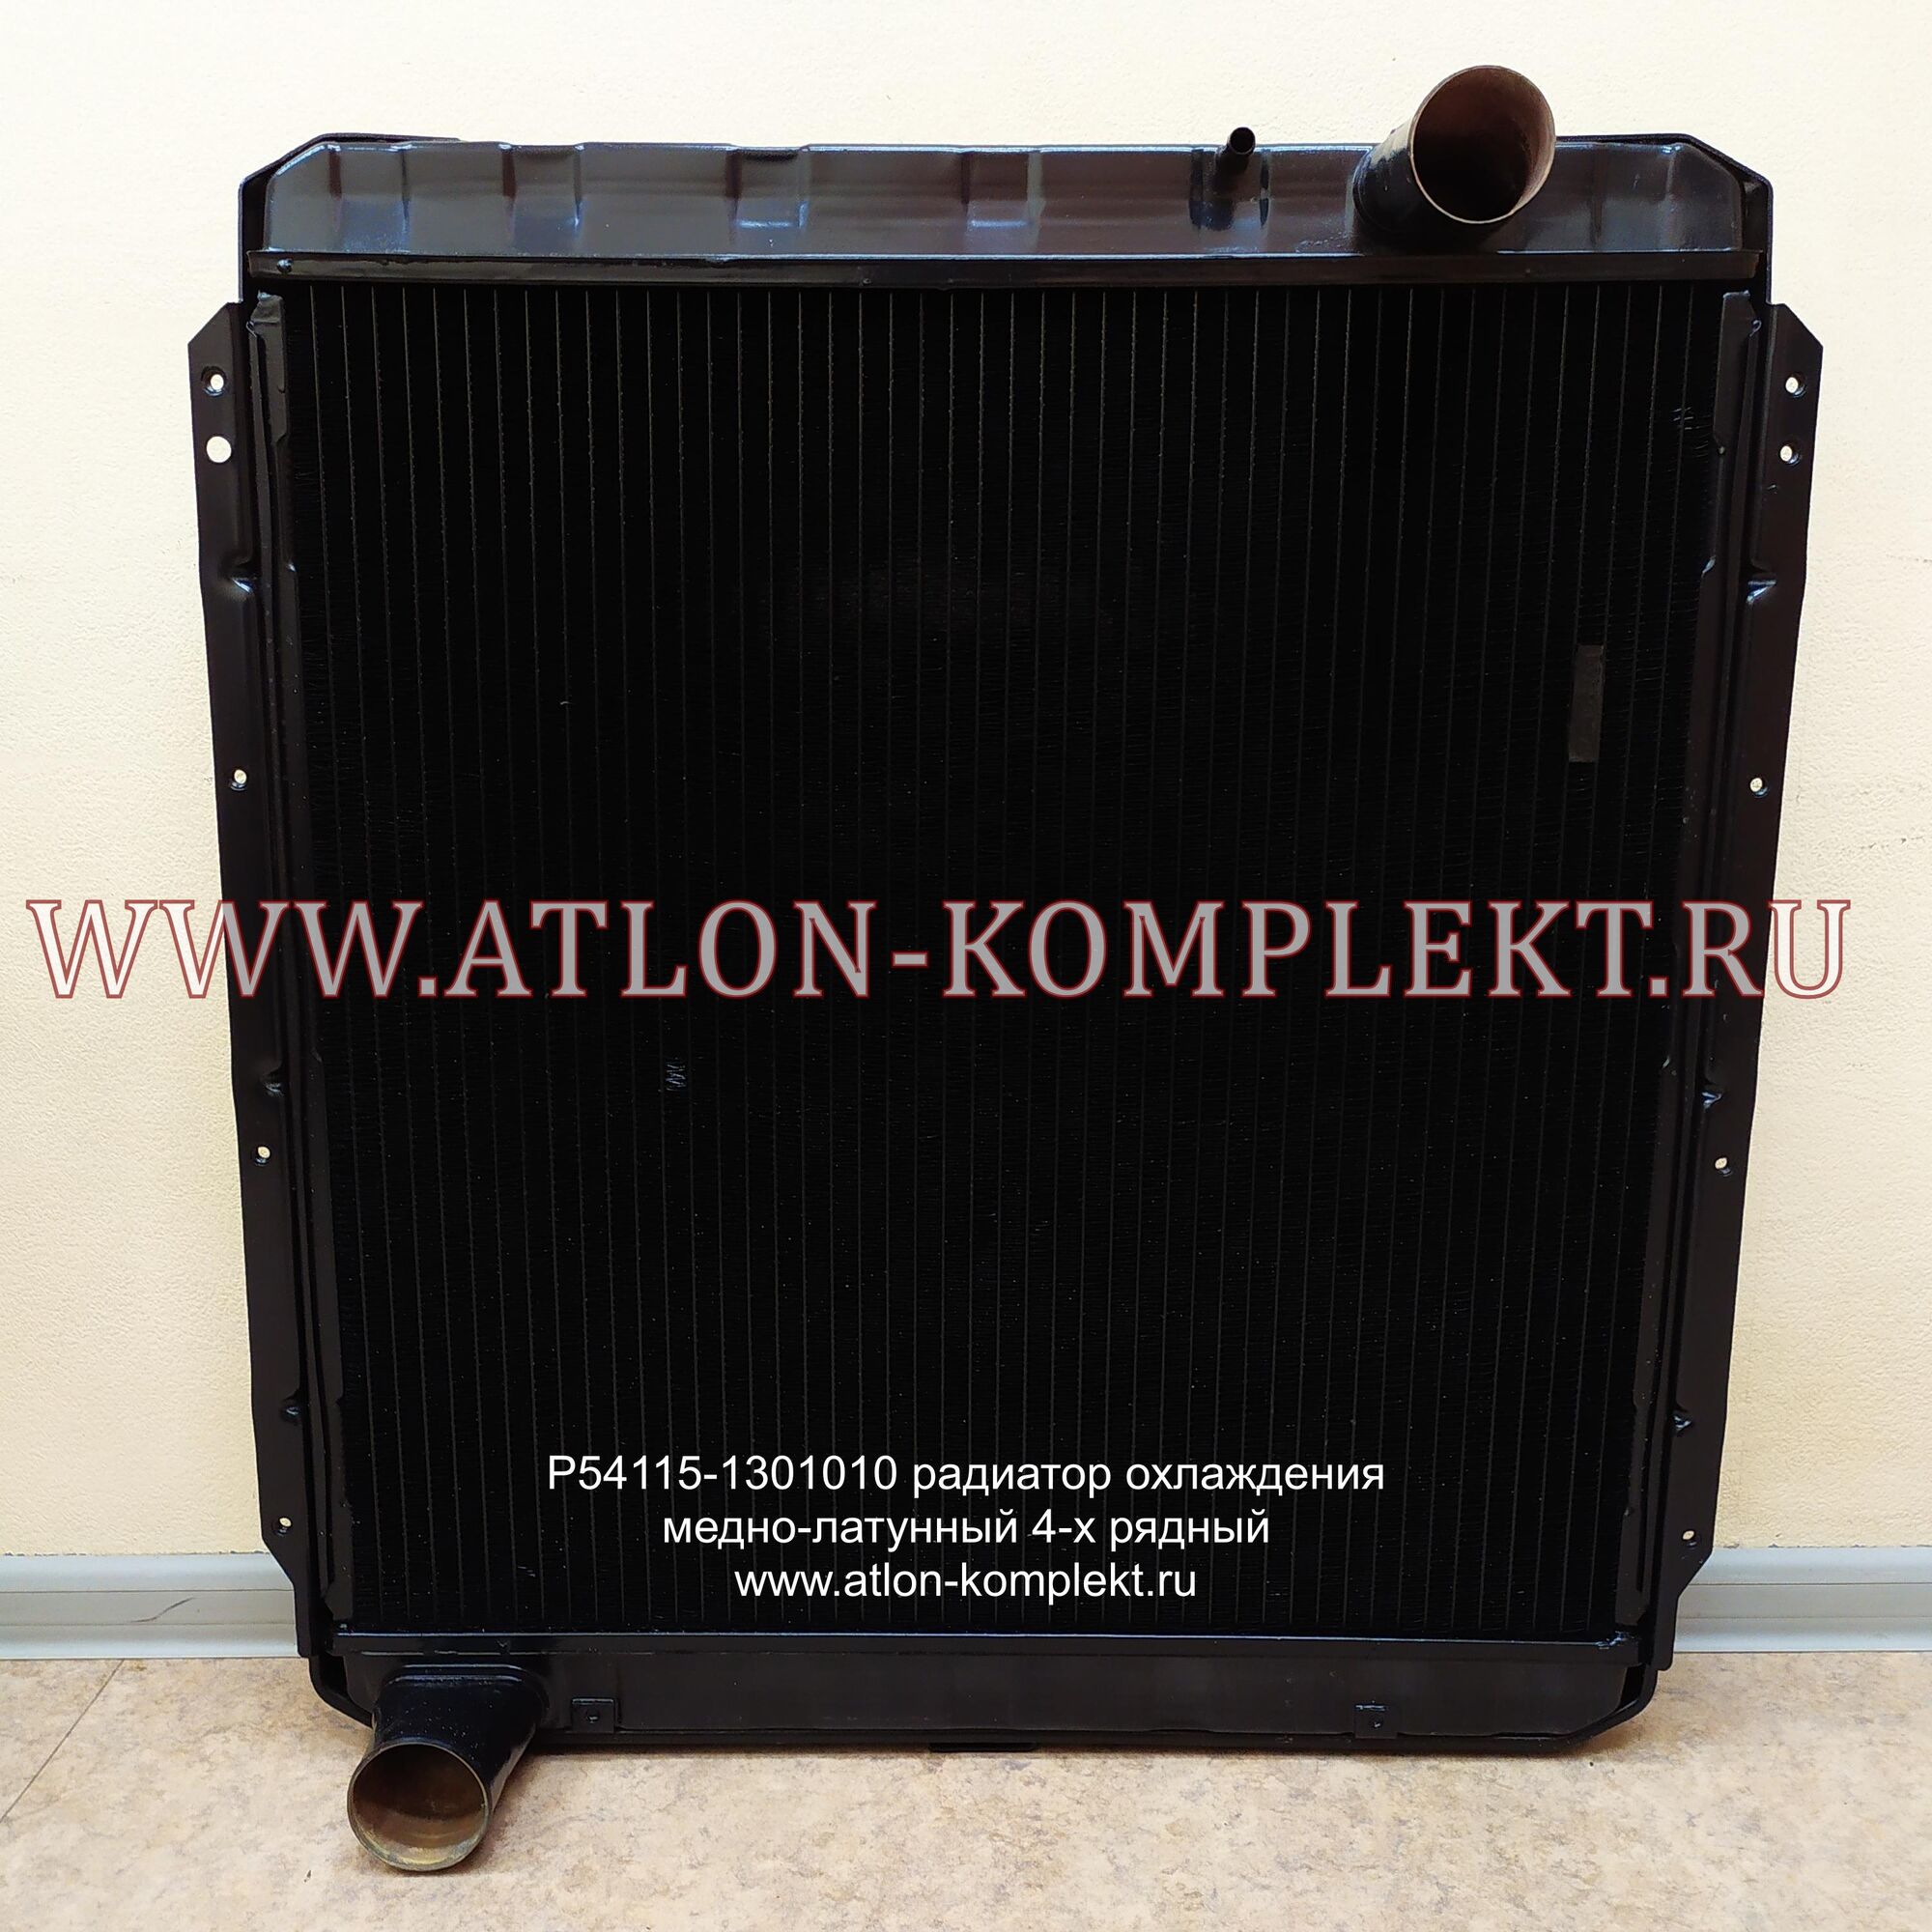 Радиатор для КАМАЗ-54115 медный Р54115-1301010 4-рядный